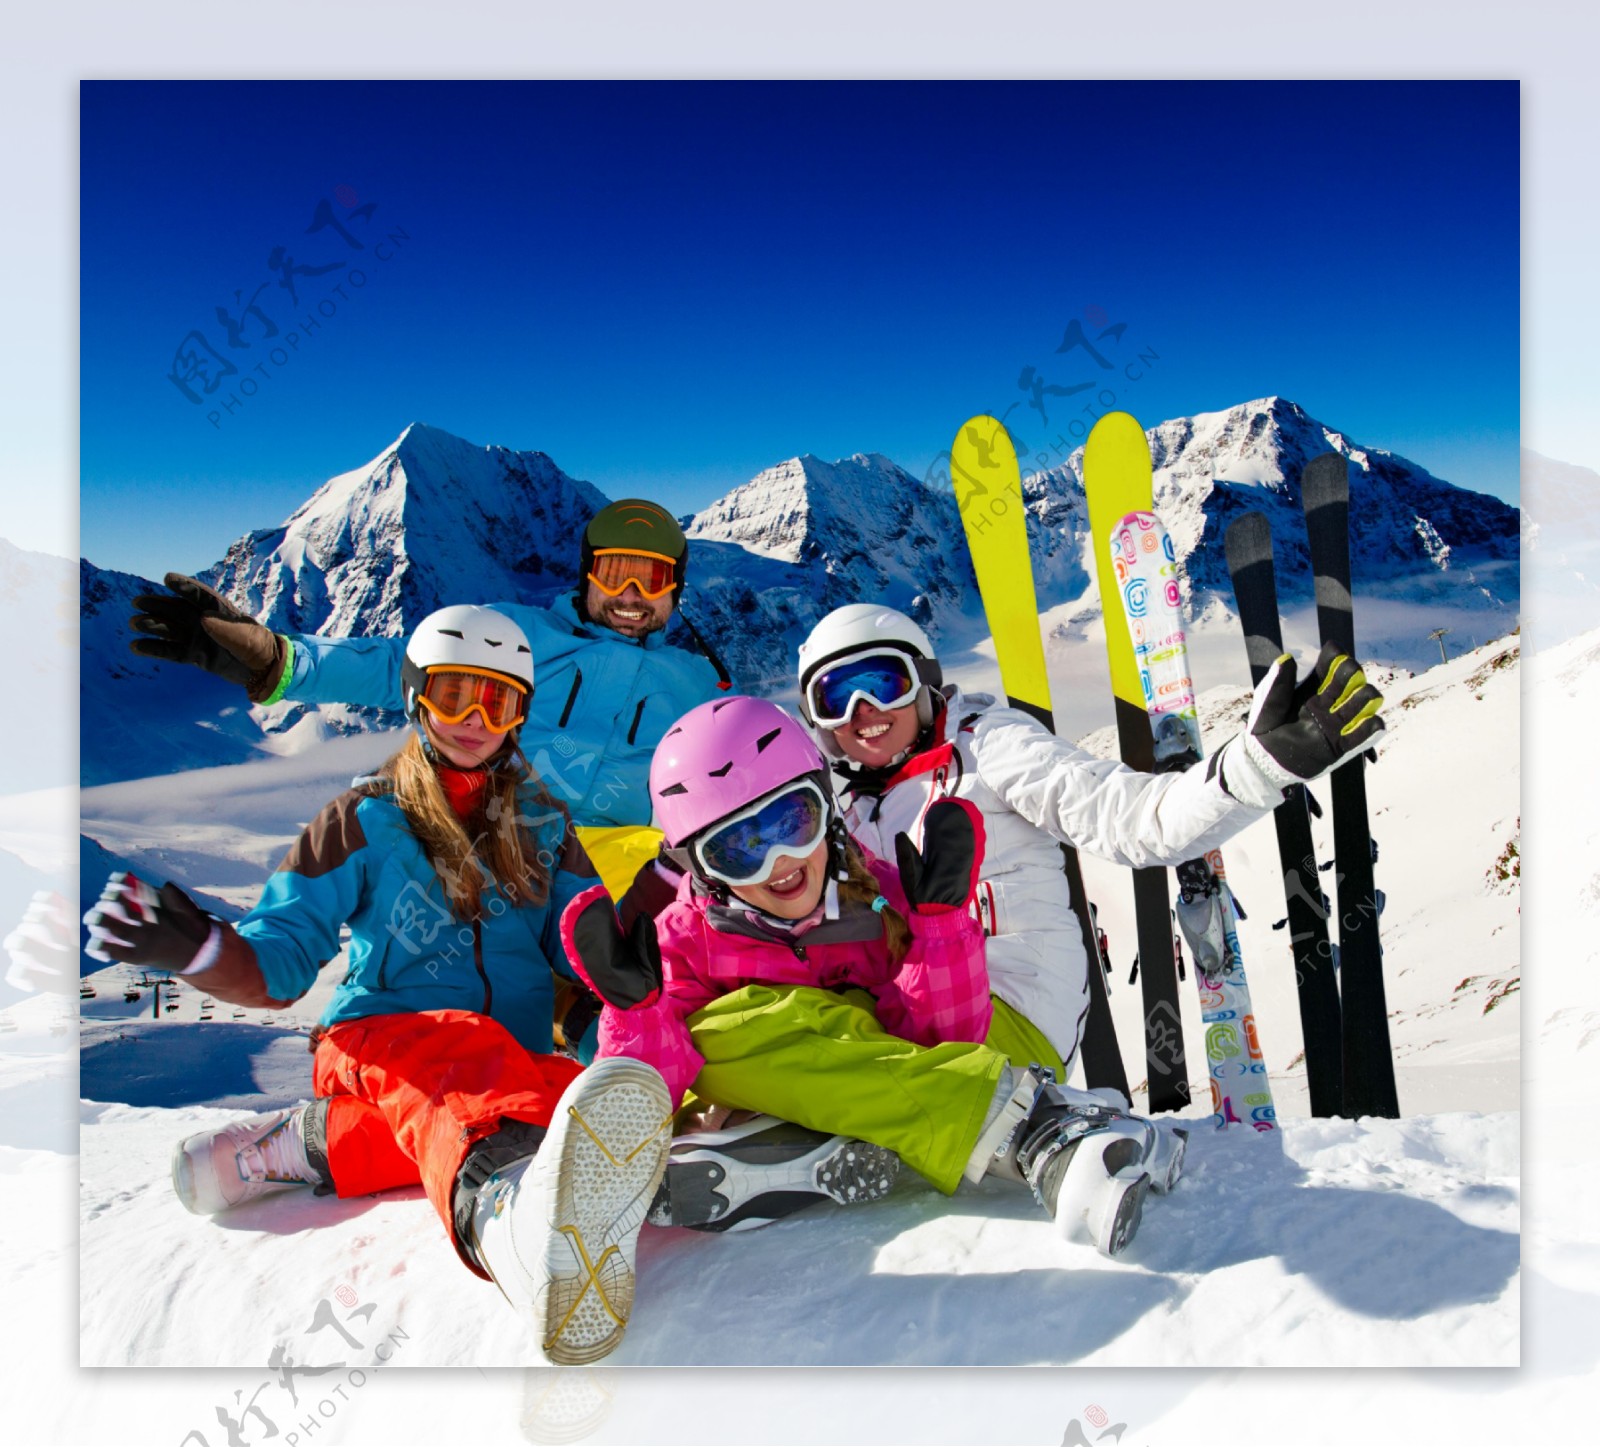 坐地雪上的一家人图片